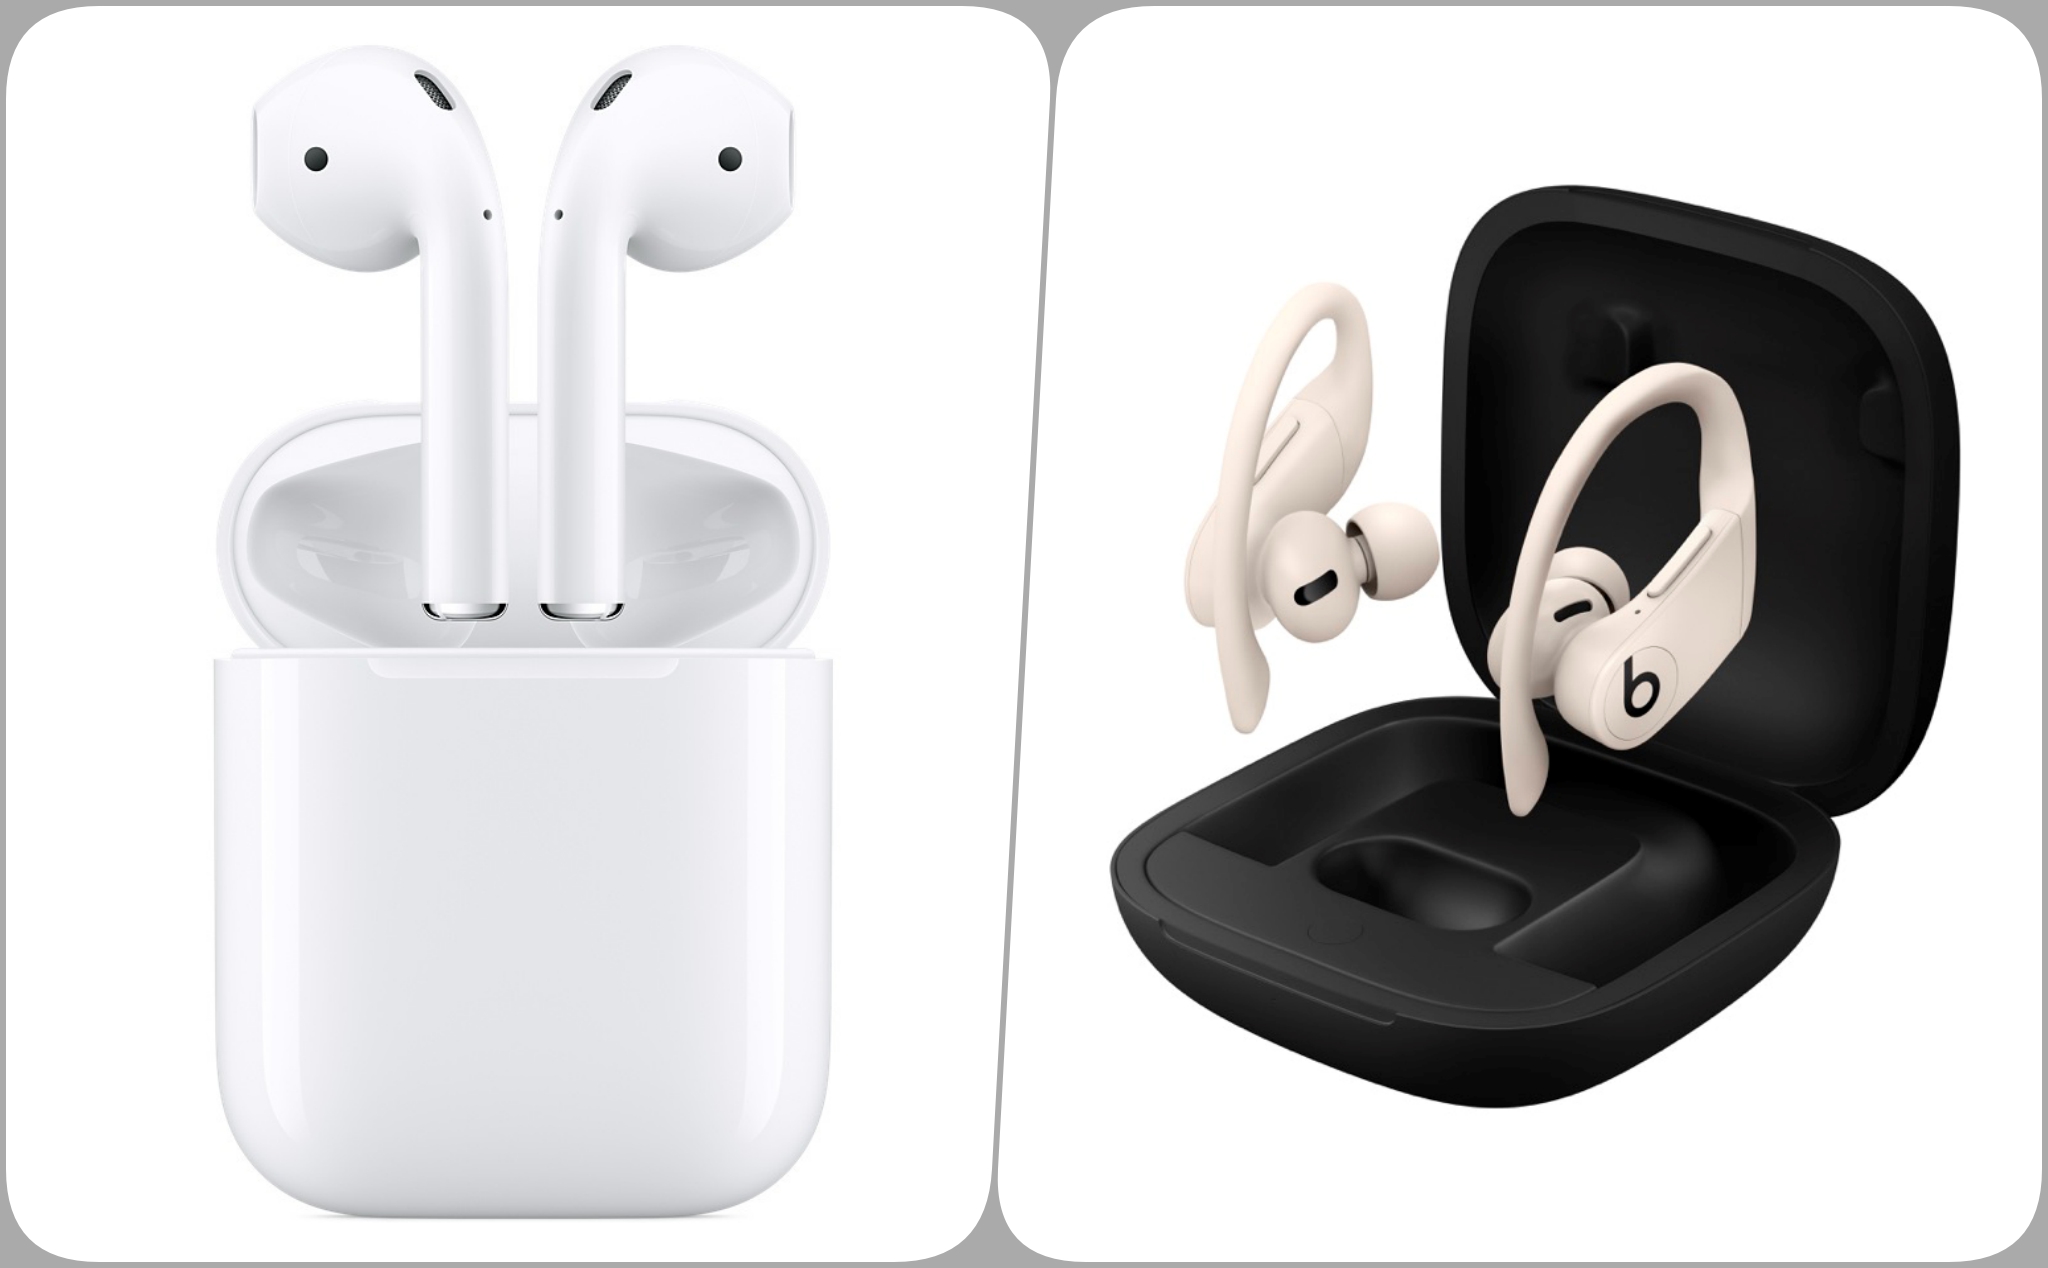 So sánh Powerbeats Pro và AirPods, 2 chiếc tai nghe true wireless mới nhất của Apple